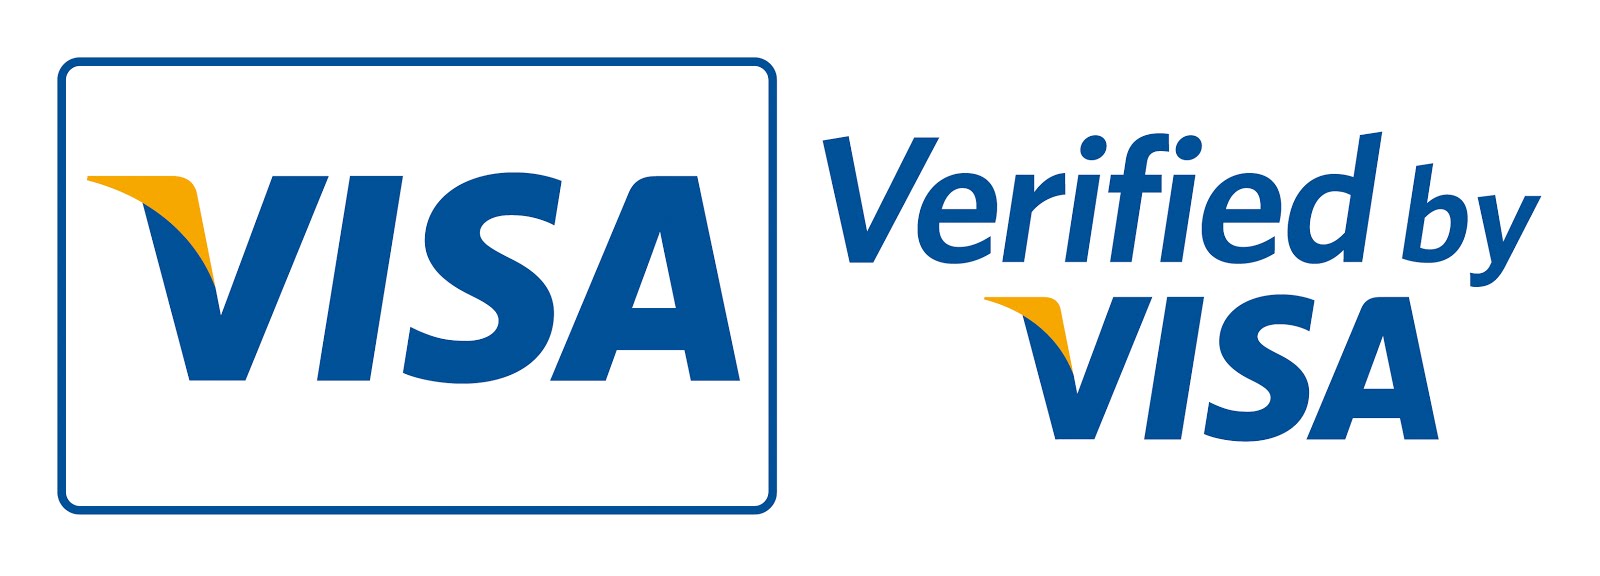 verified-by-visa